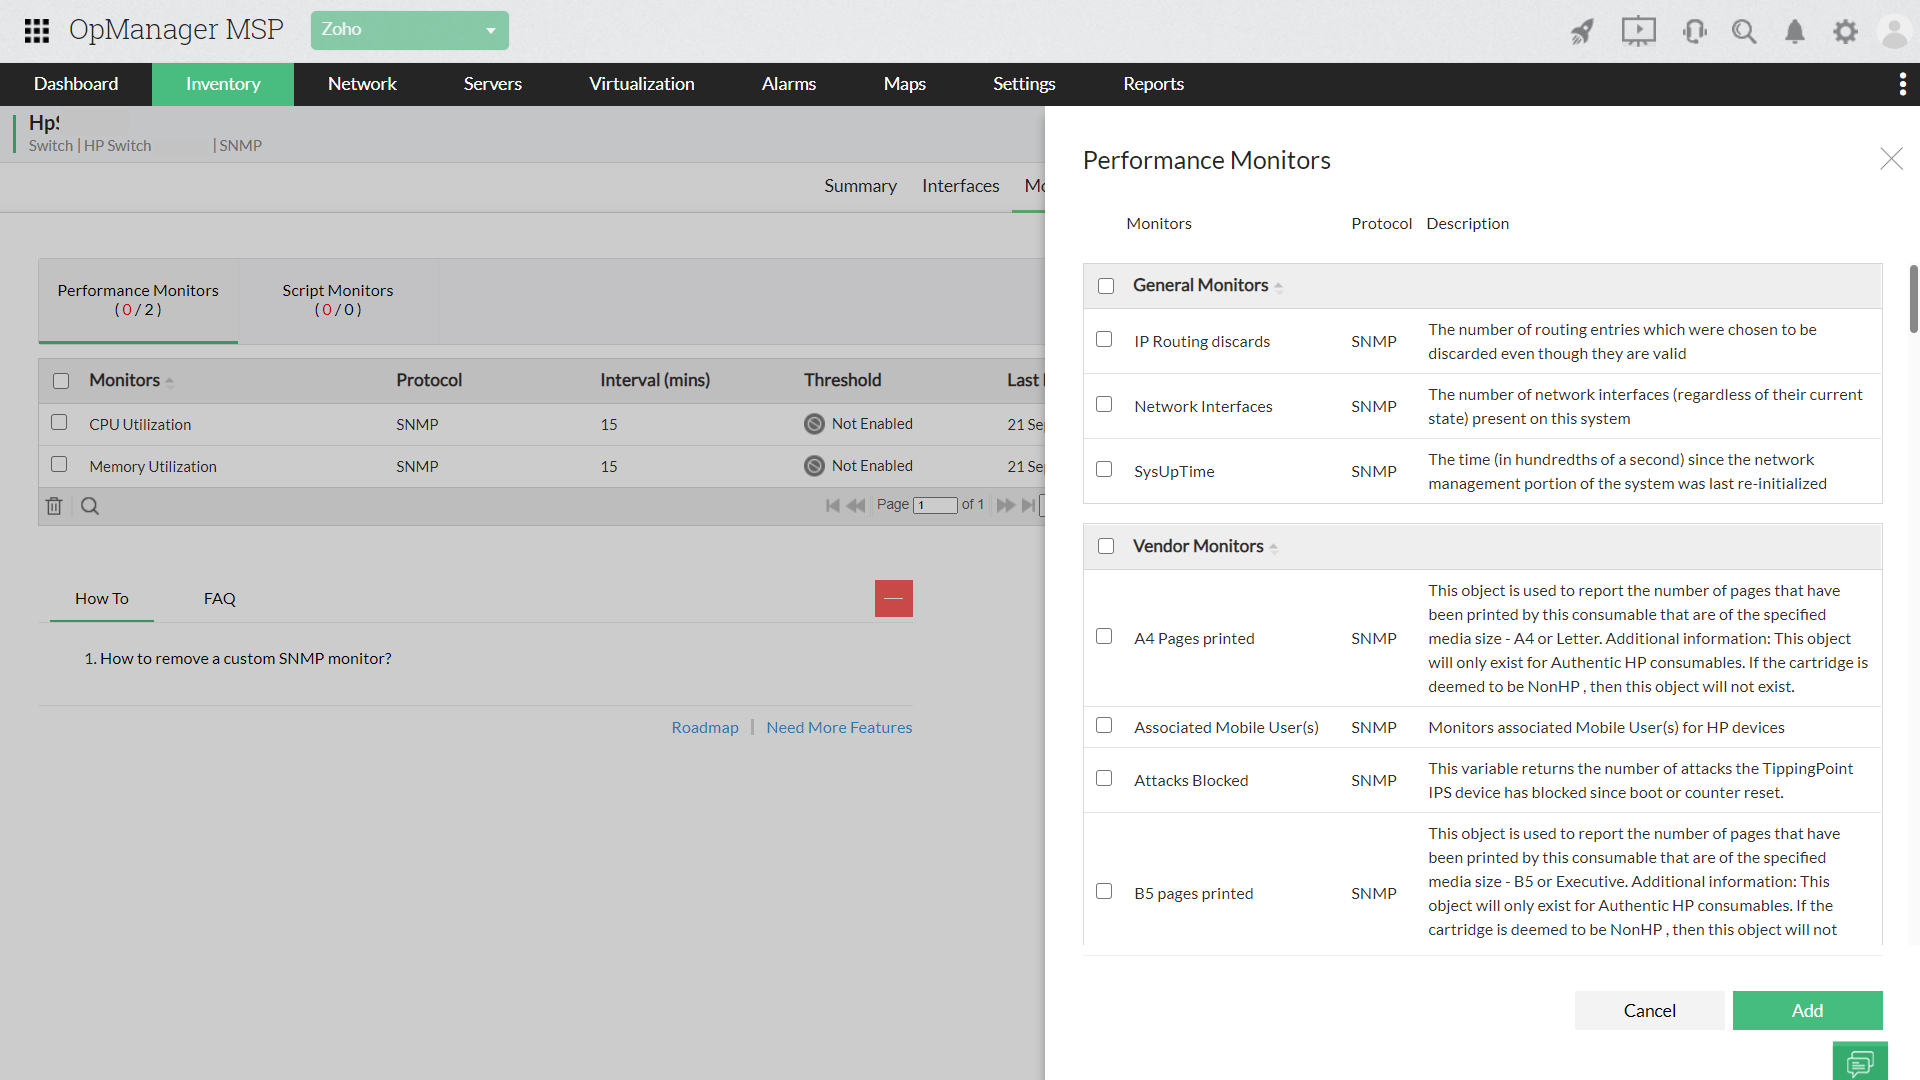 monitoreo en tiempo real del desempeño y la disponibilidad de red - ManageEngine OpManager MSP